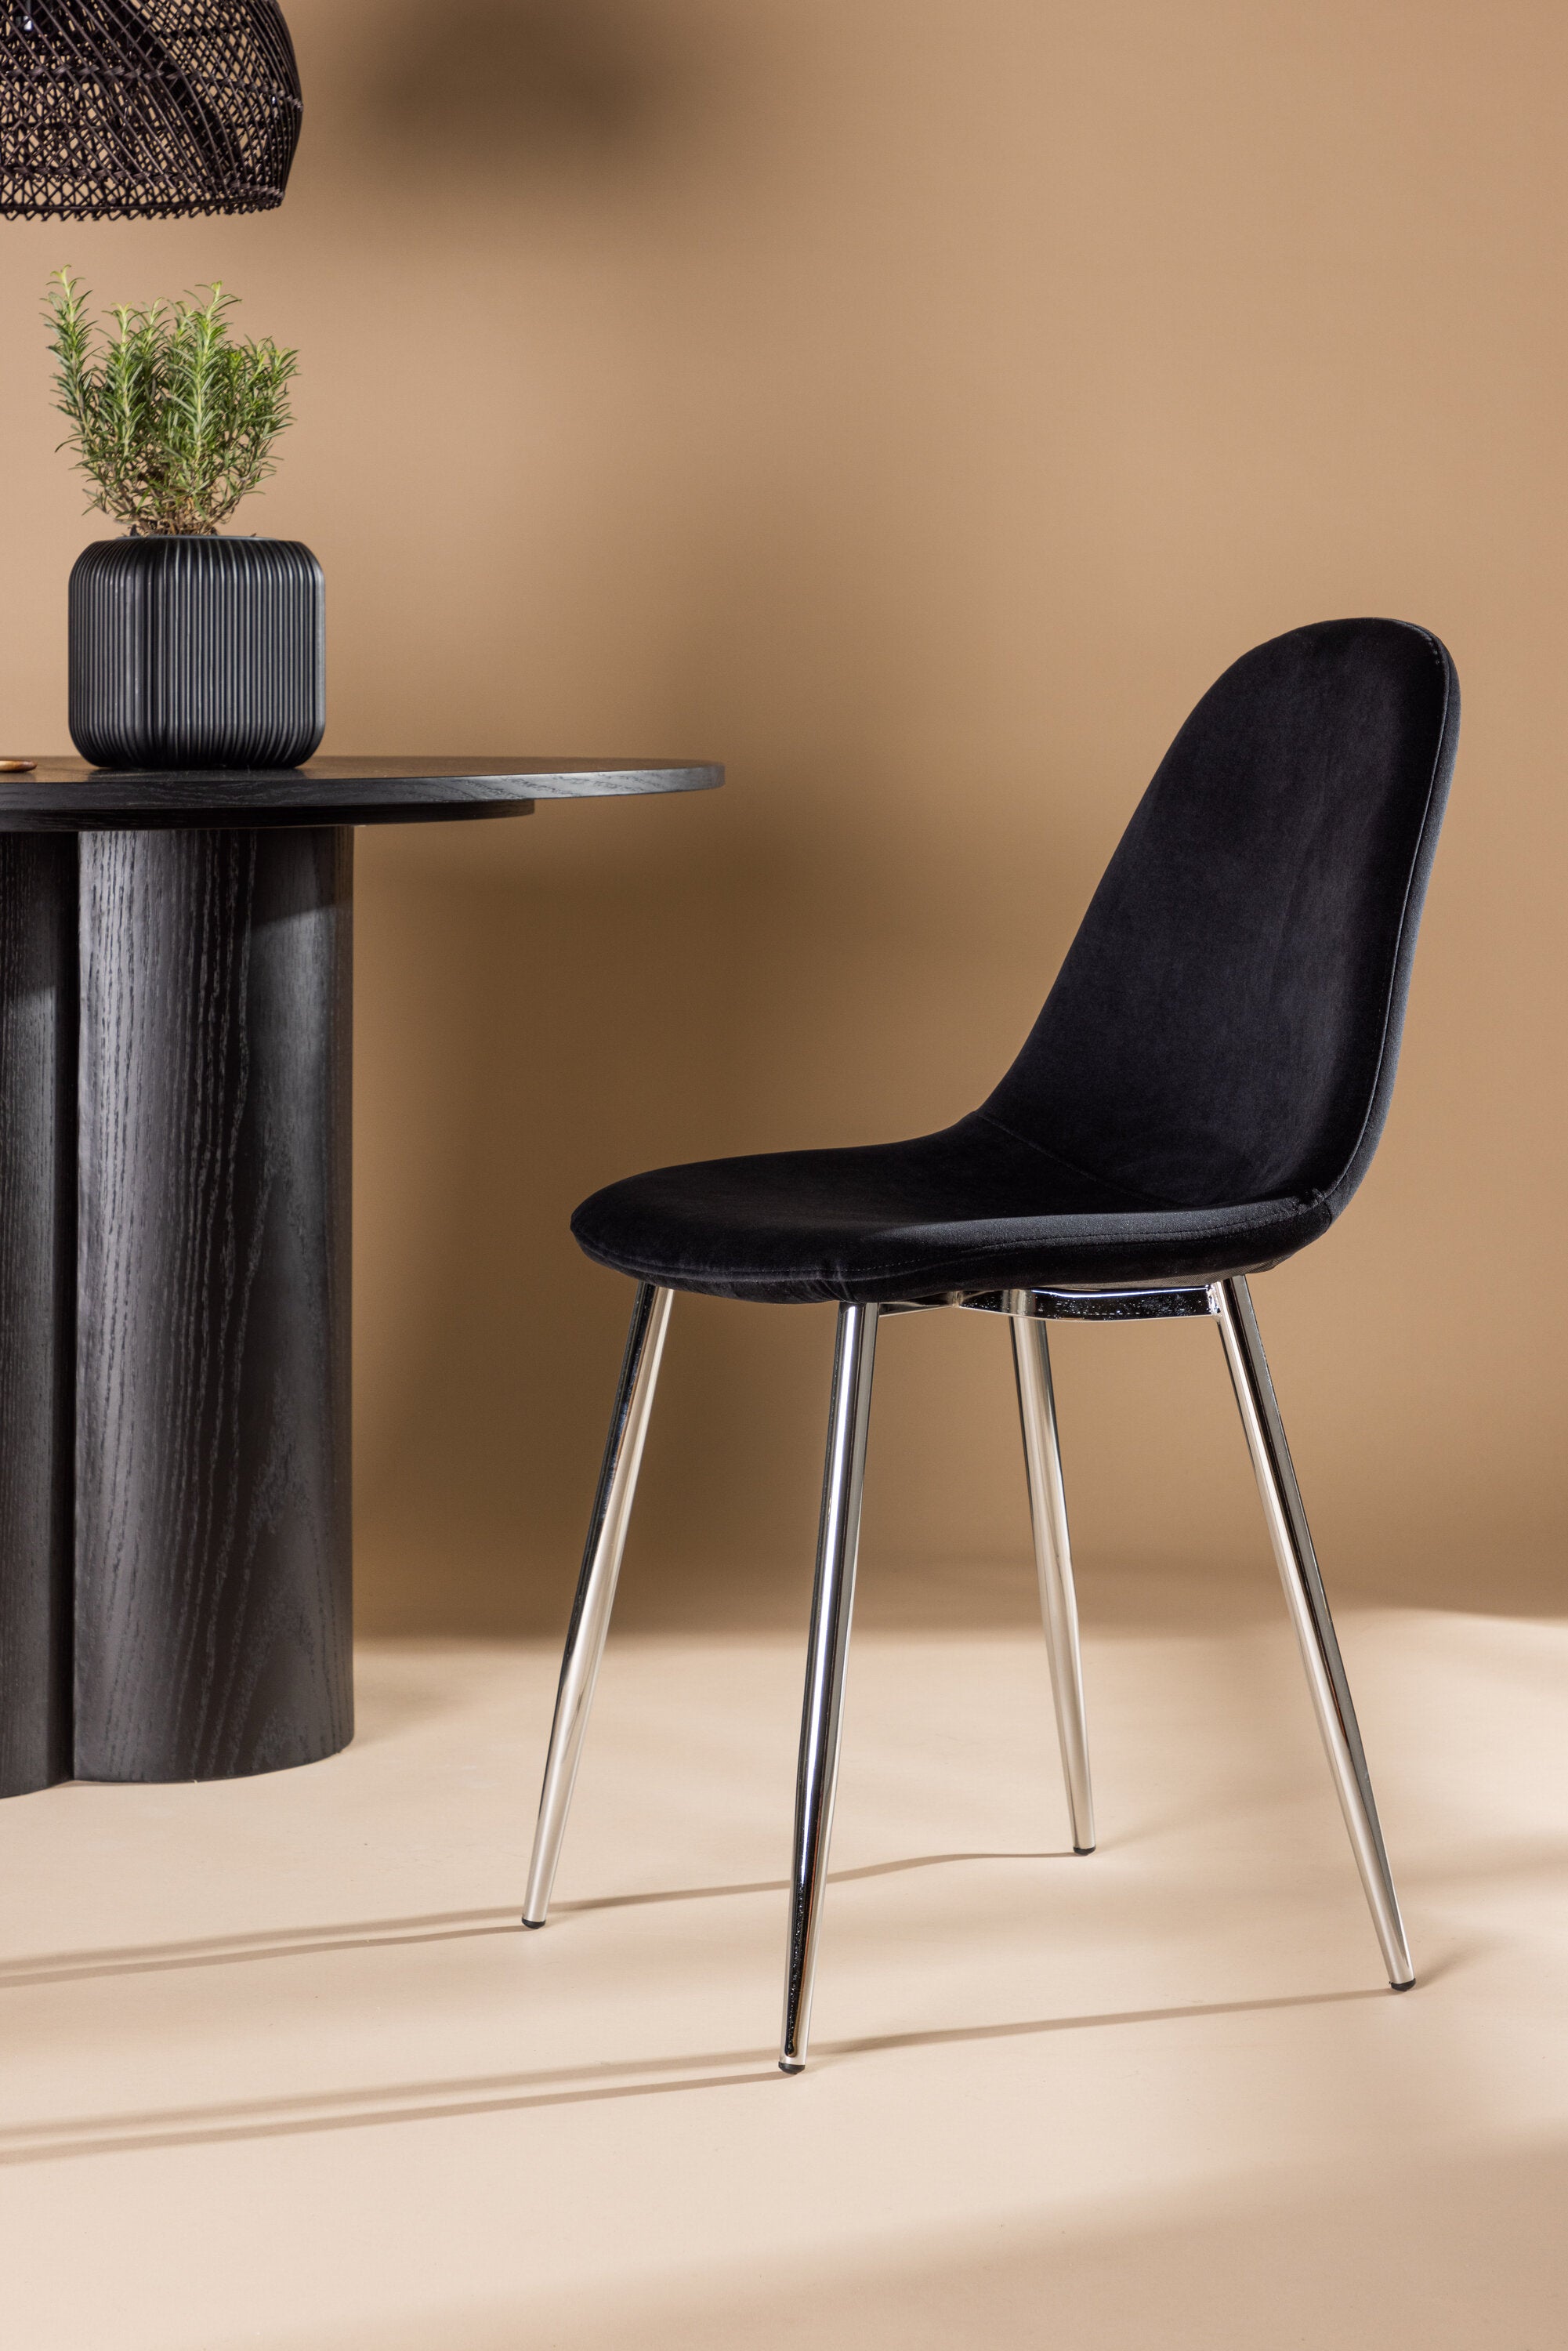 Polar Stuhl in Schwarz/Chrome präsentiert im Onlineshop von KAQTU Design AG. Stuhl ist von Venture Home